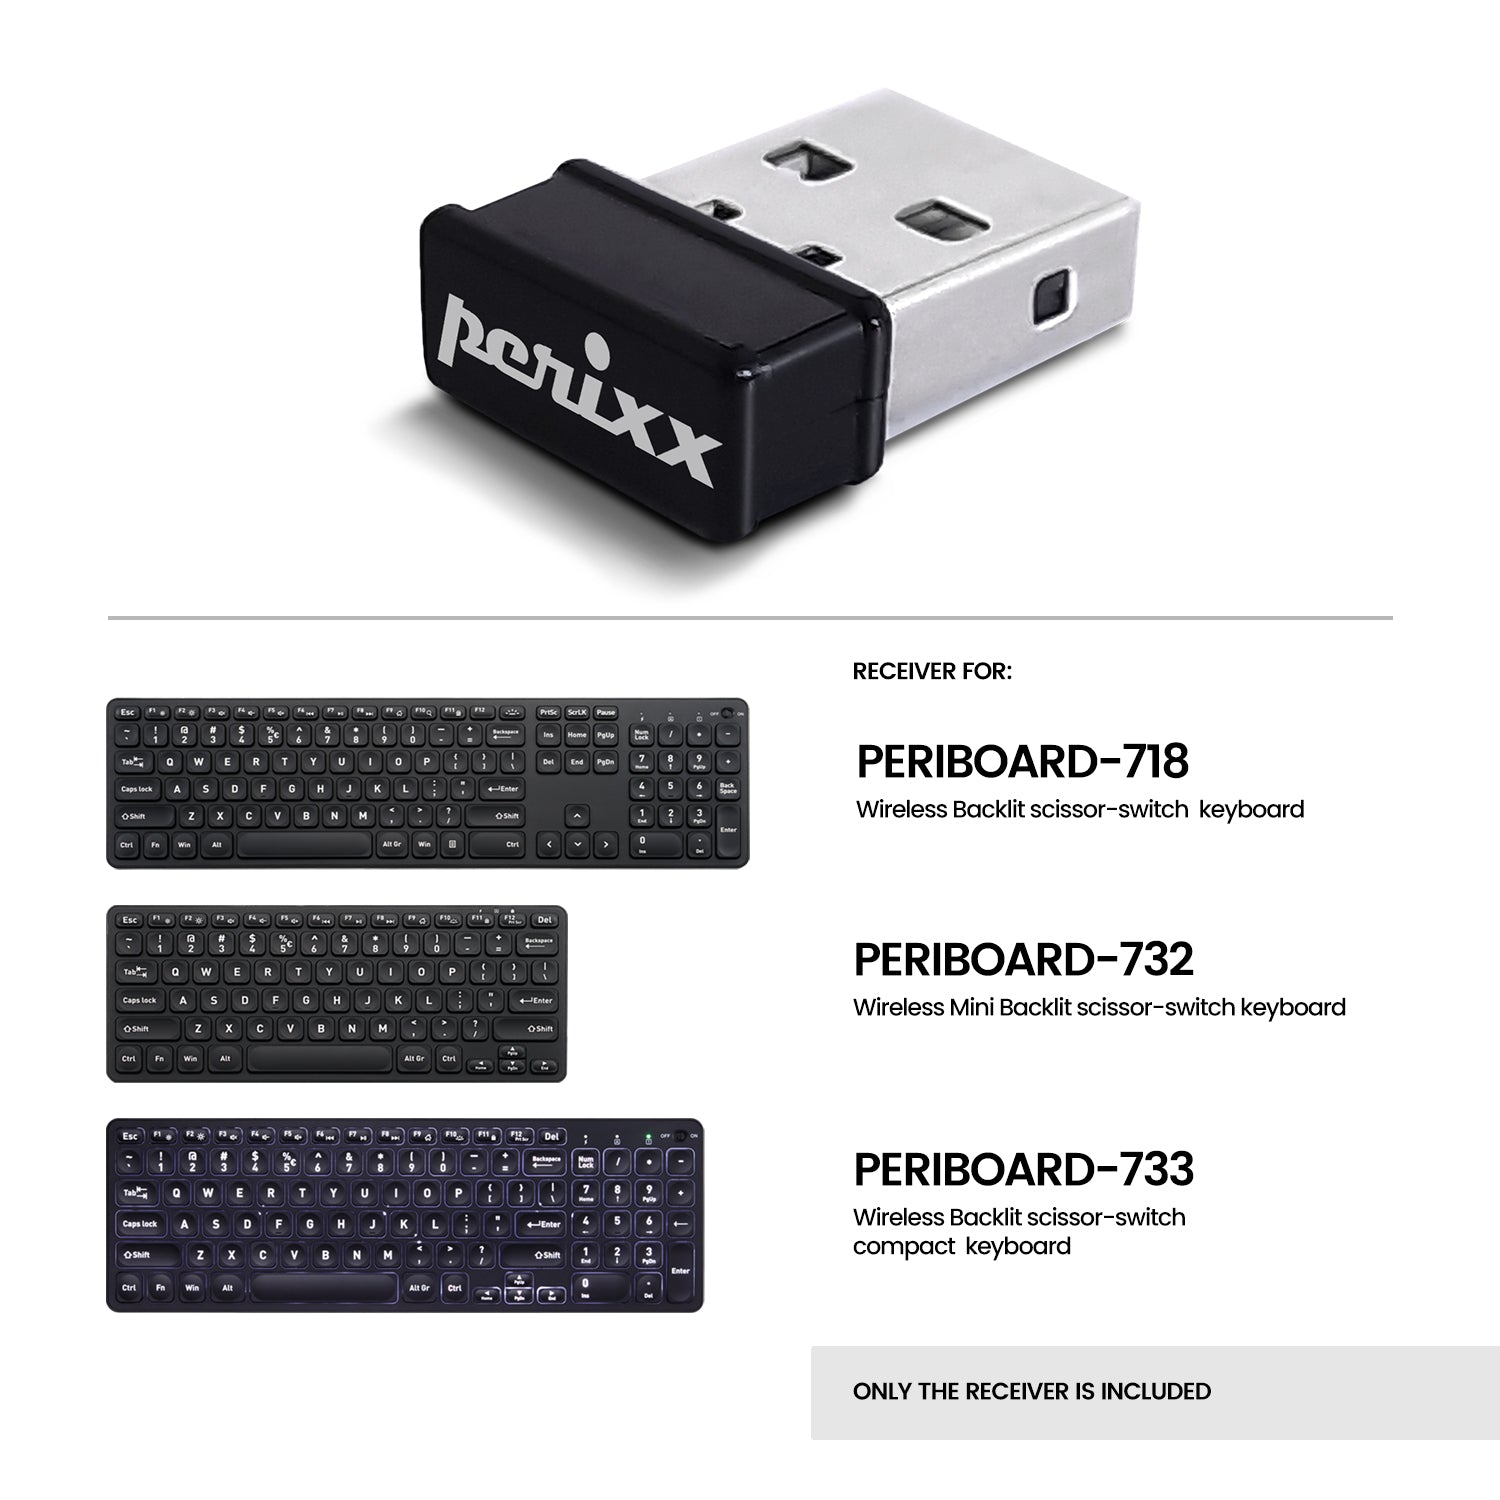 USB dongle receiver for PERIBOARD-718-732-733 – Perixx USA